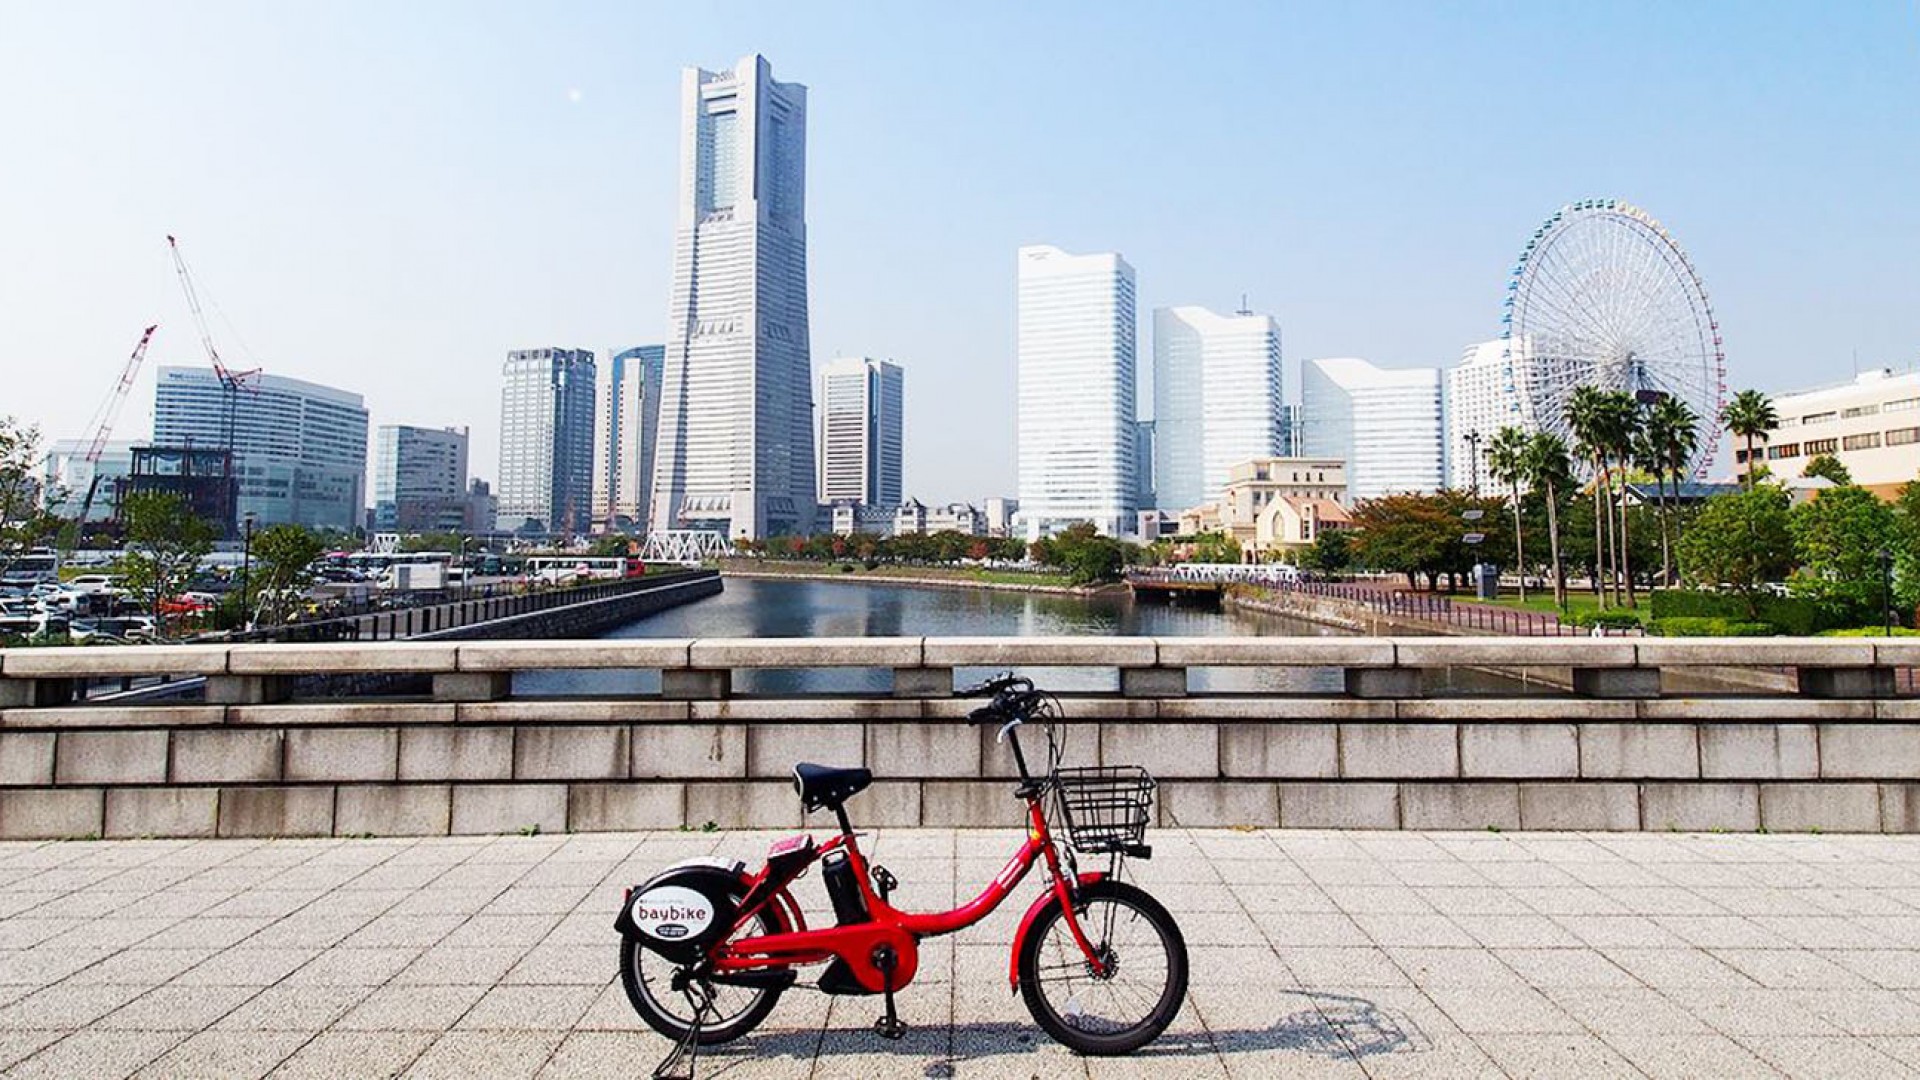 Visite de Yokohama en Baybike (vélo électrique)